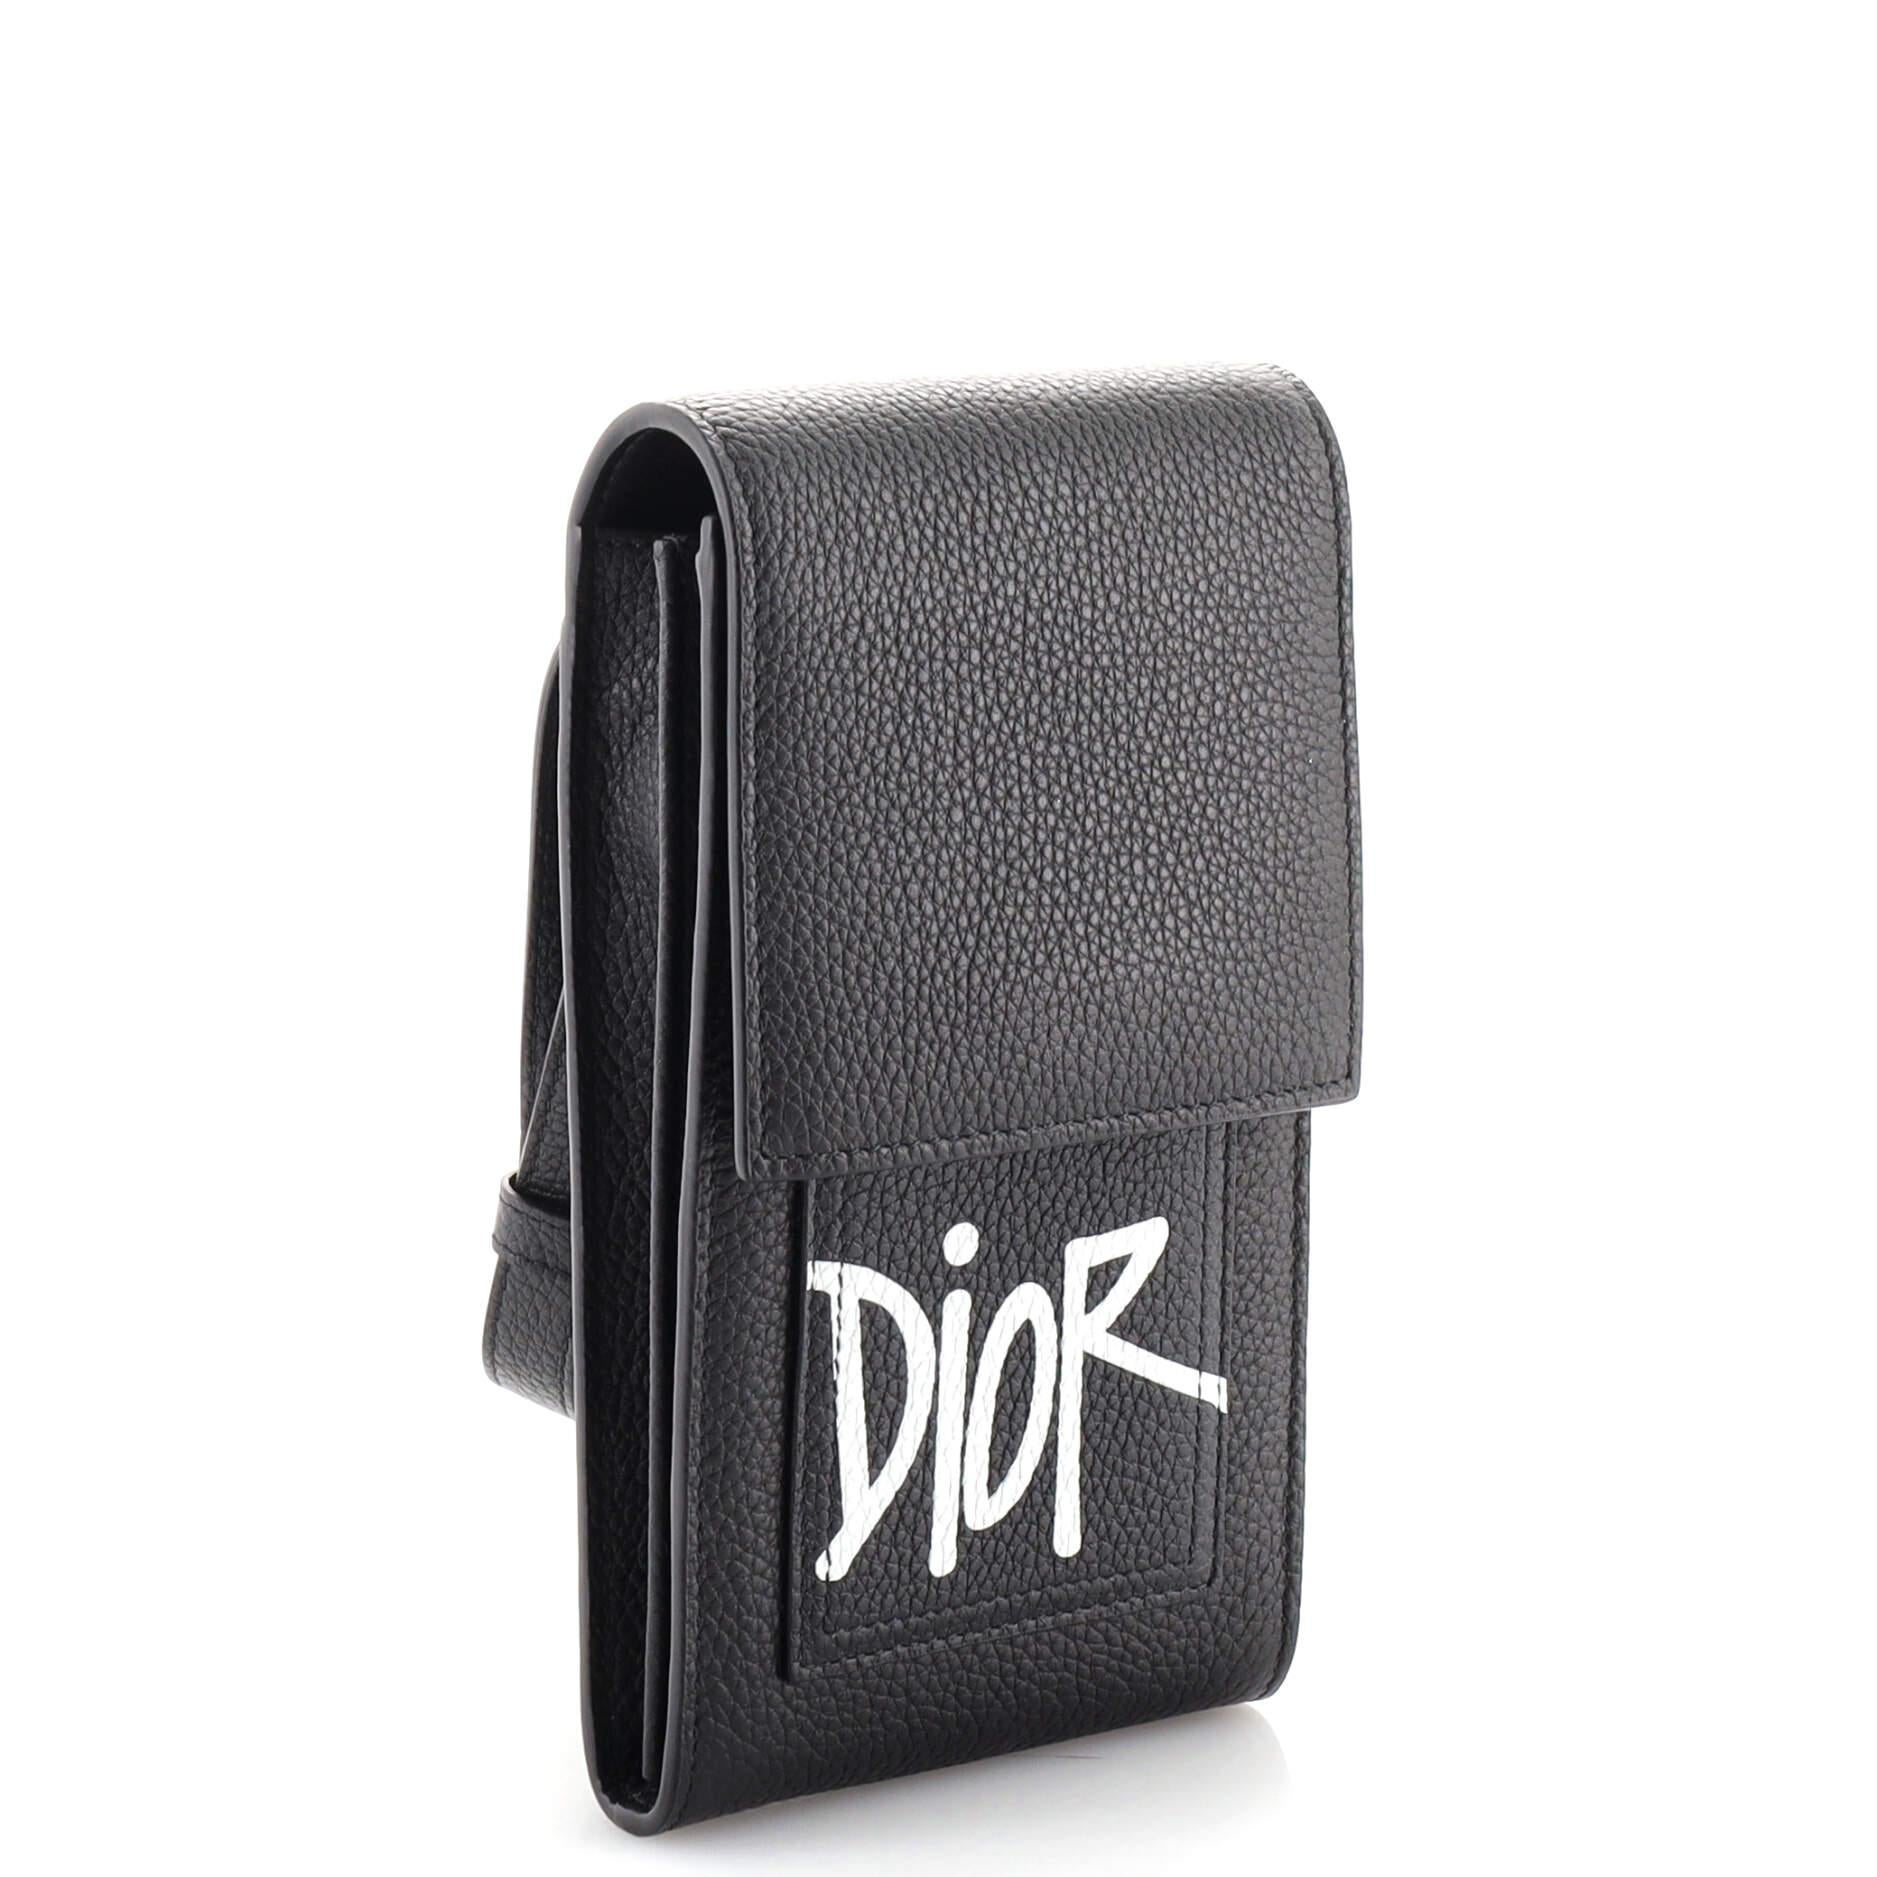 dior phone bag